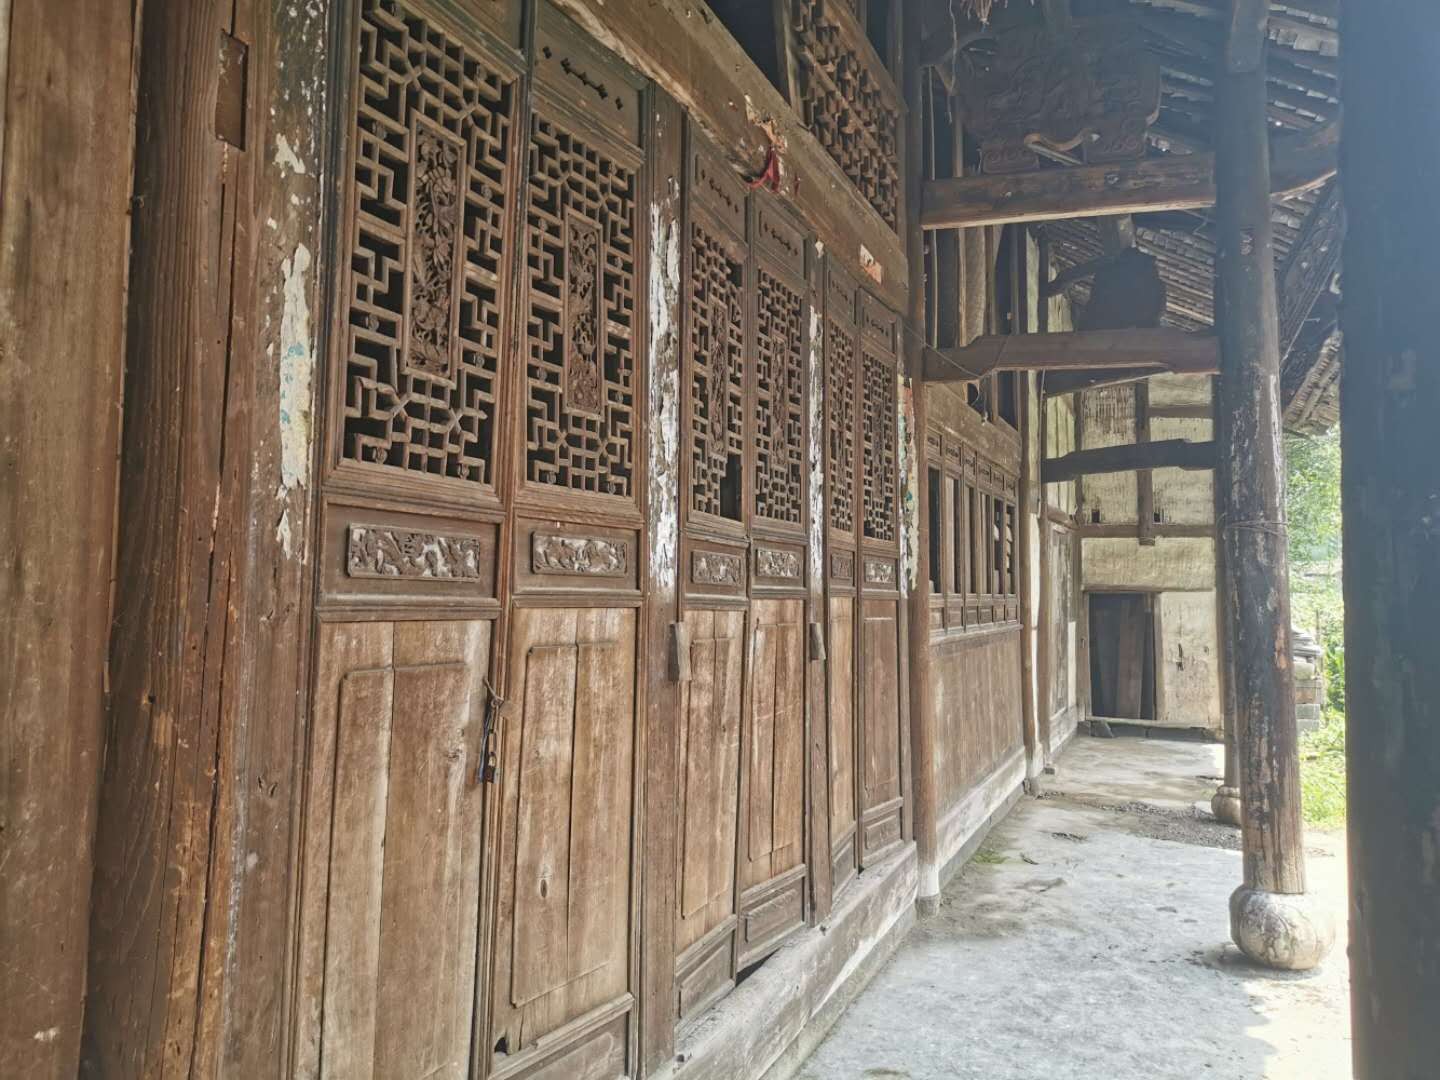 中国金丝楠木的房子图片